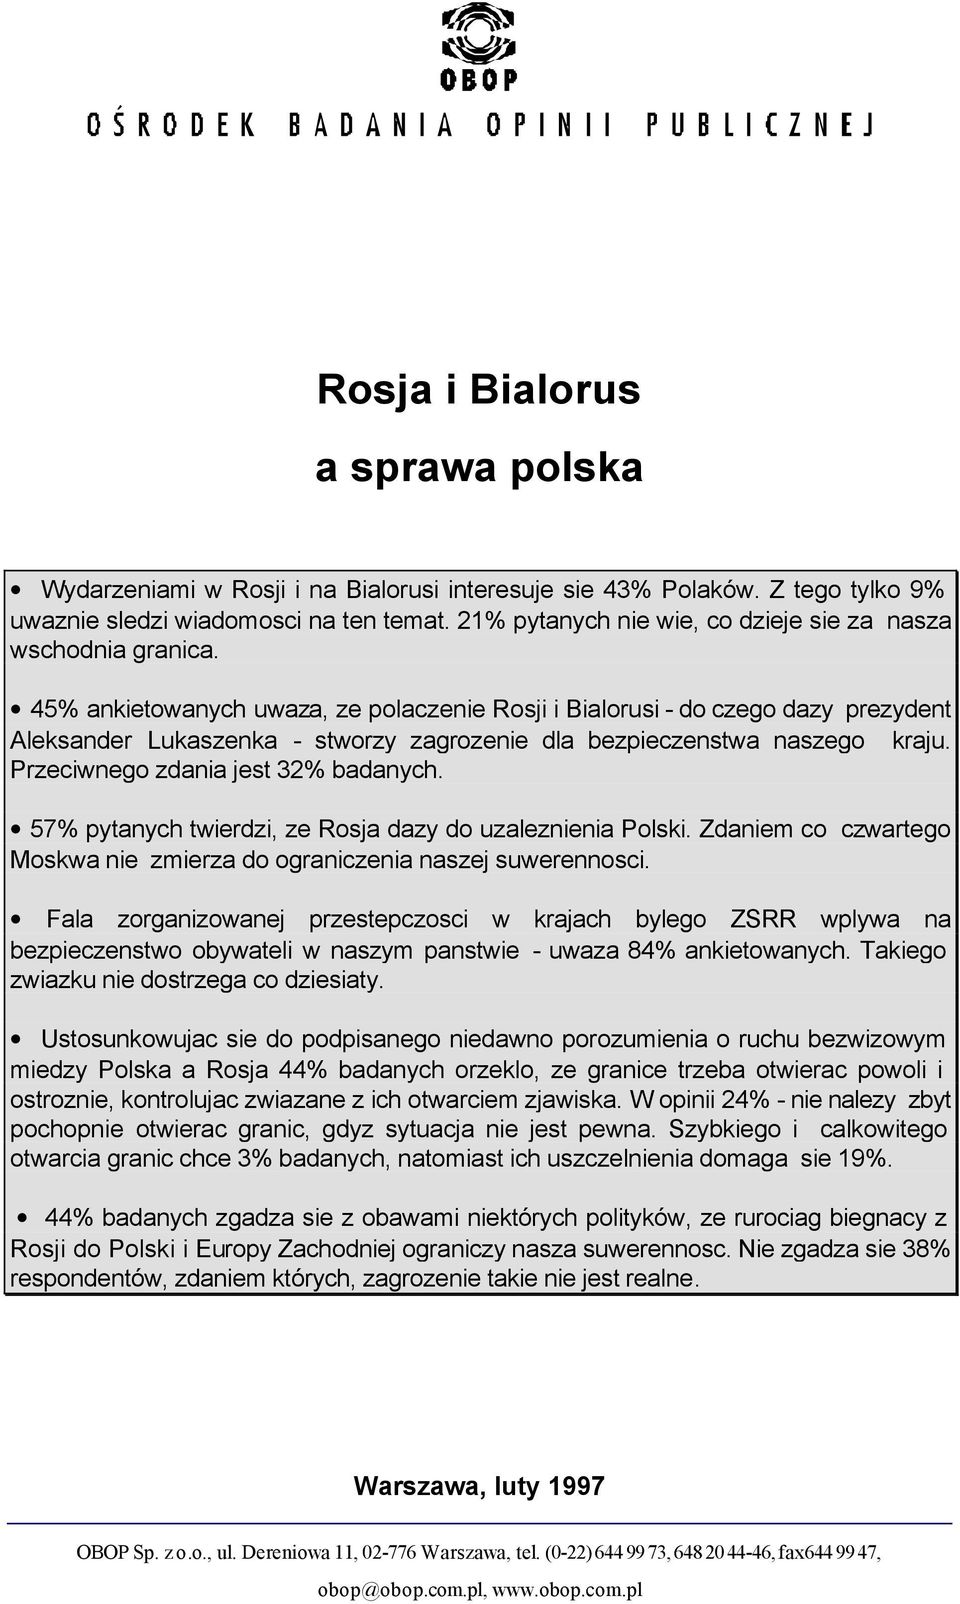 45% ankietowanych uwaza, ze polaczenie Rosji i Bialorusi - do czego dazy prezydent Aleksander Lukaszenka - stworzy zagrozenie dla bezpieczenstwa naszego kraju. Przeciwnego zdania jest 32% badanych.